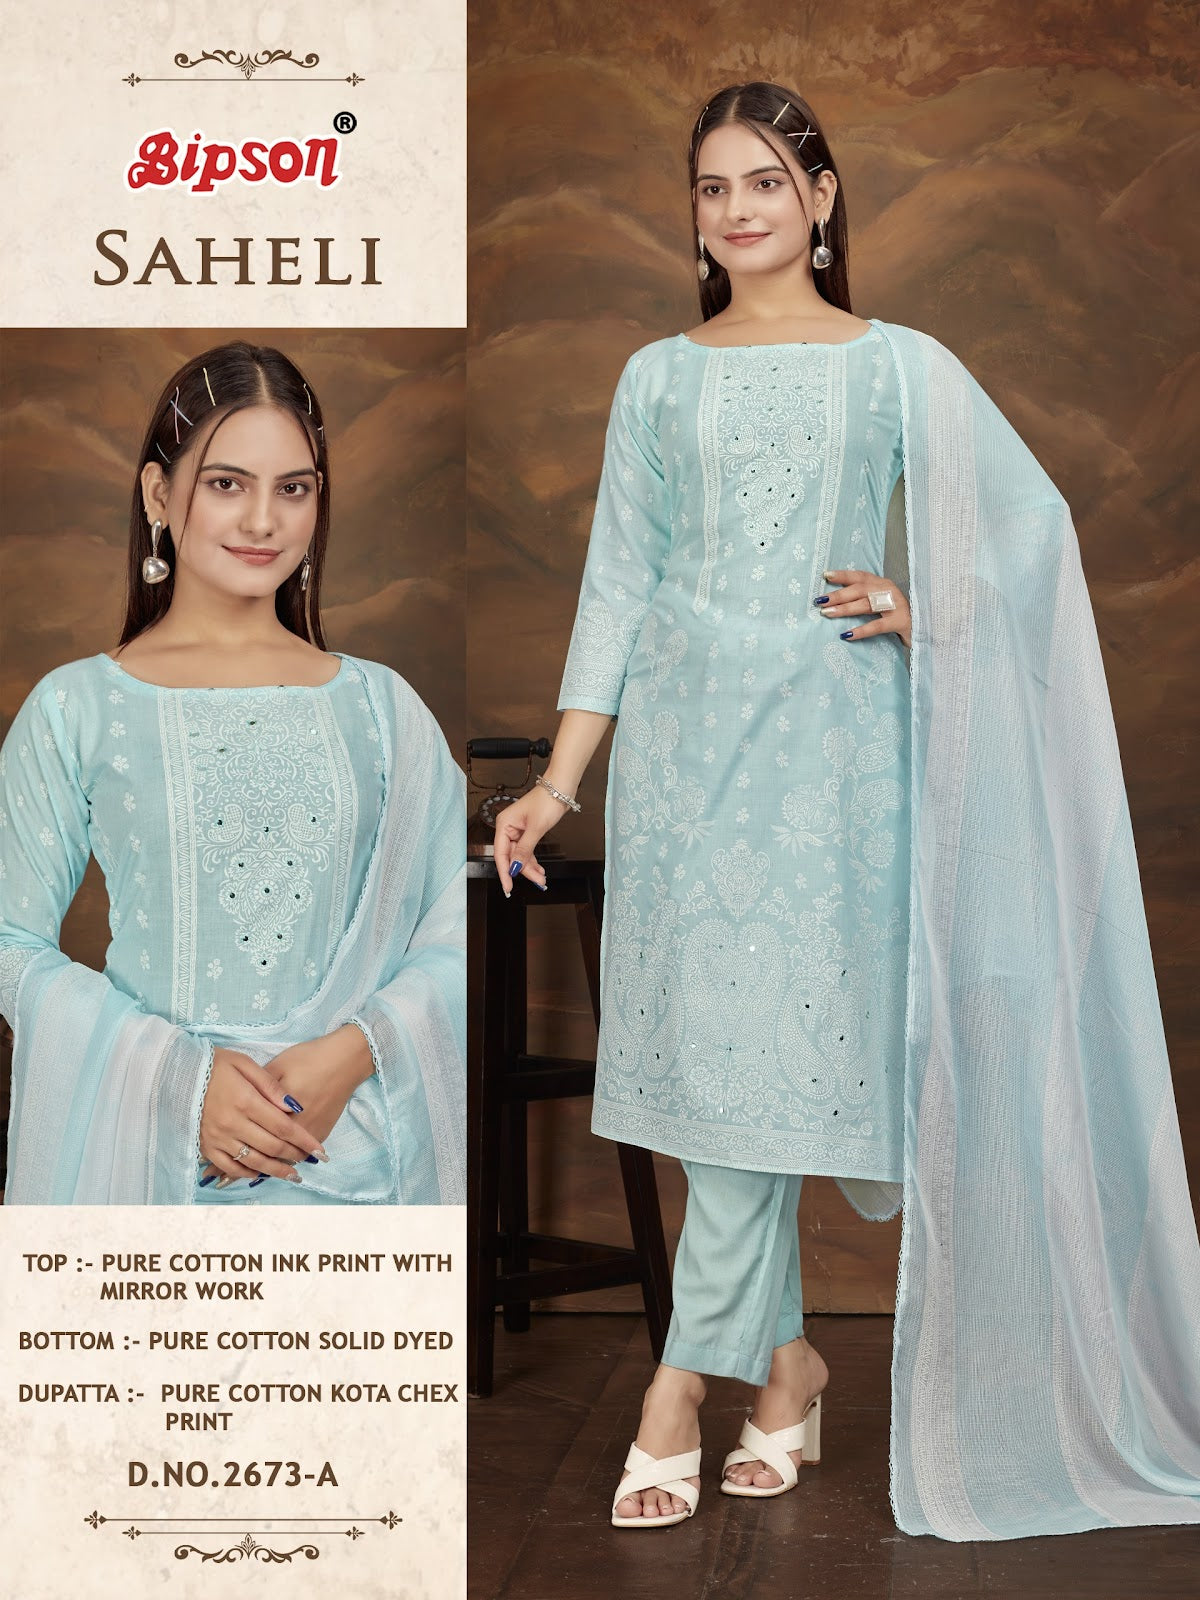 Saheli 2673 Bipson Prints Cotton Pant Style Suits Supplier India